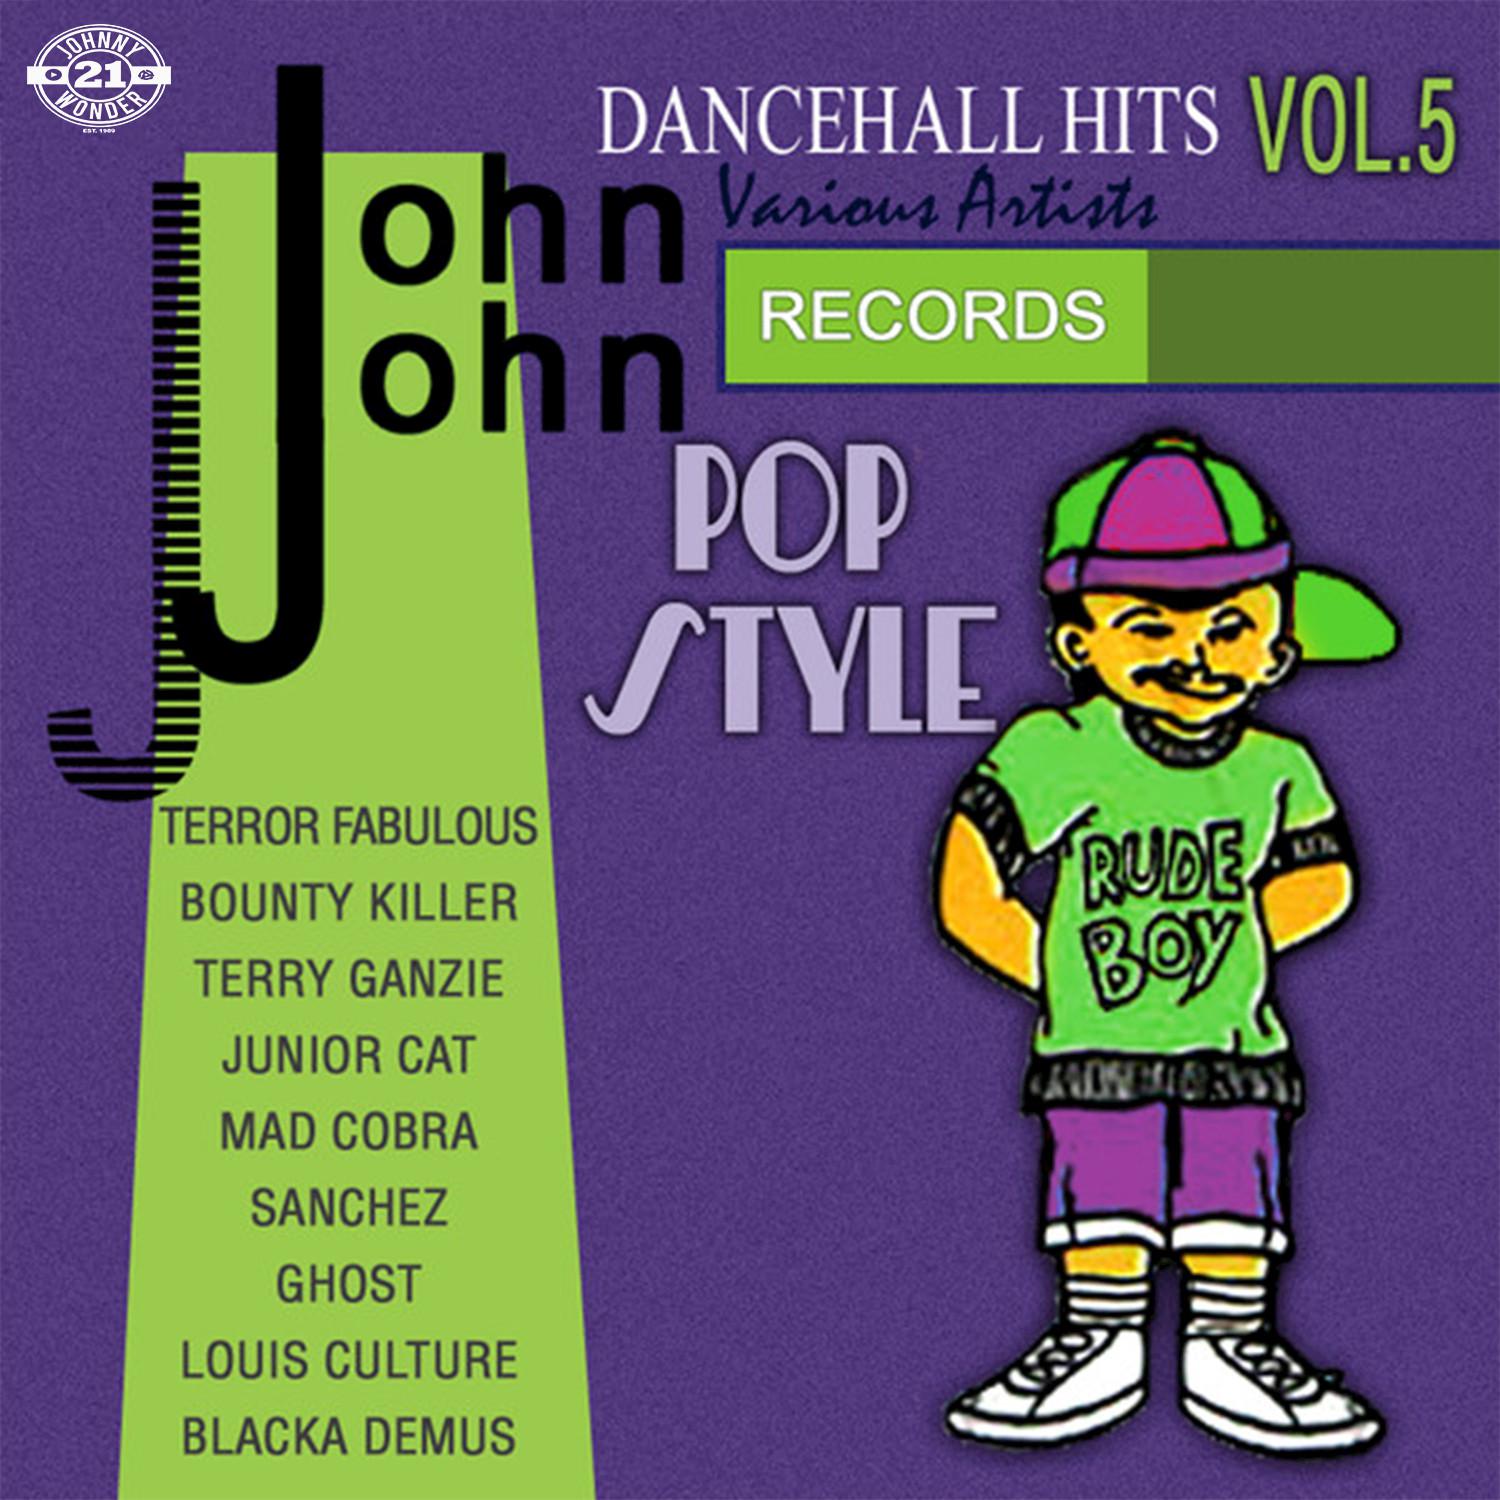 John John Dancehall Hits, Vol. 5